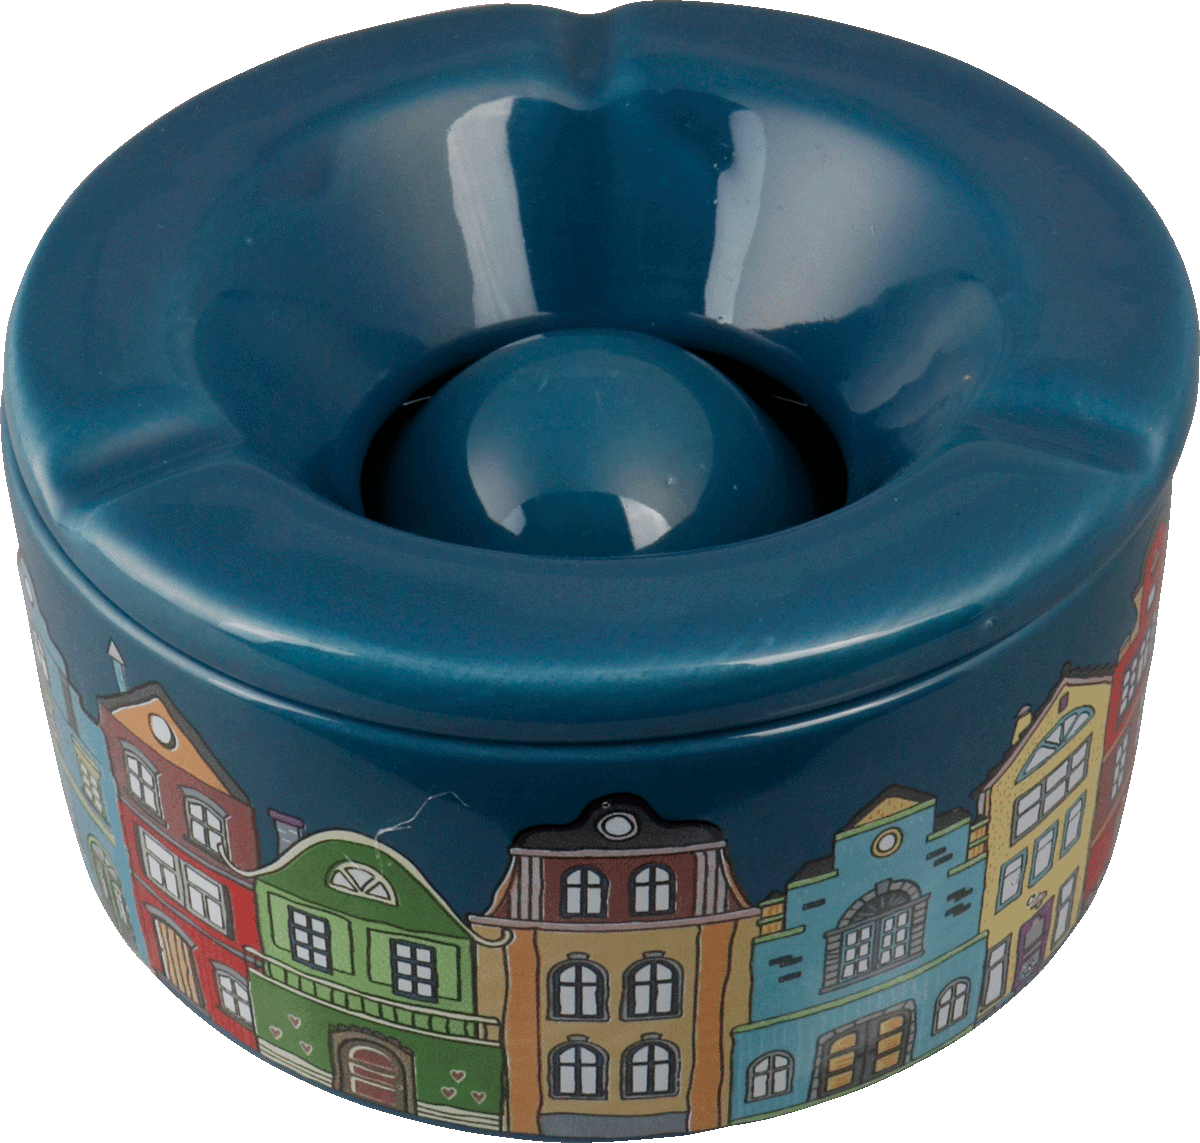 Windaschenbecher Keramik Häuser farbig sortiert 12cm für 6,25 €